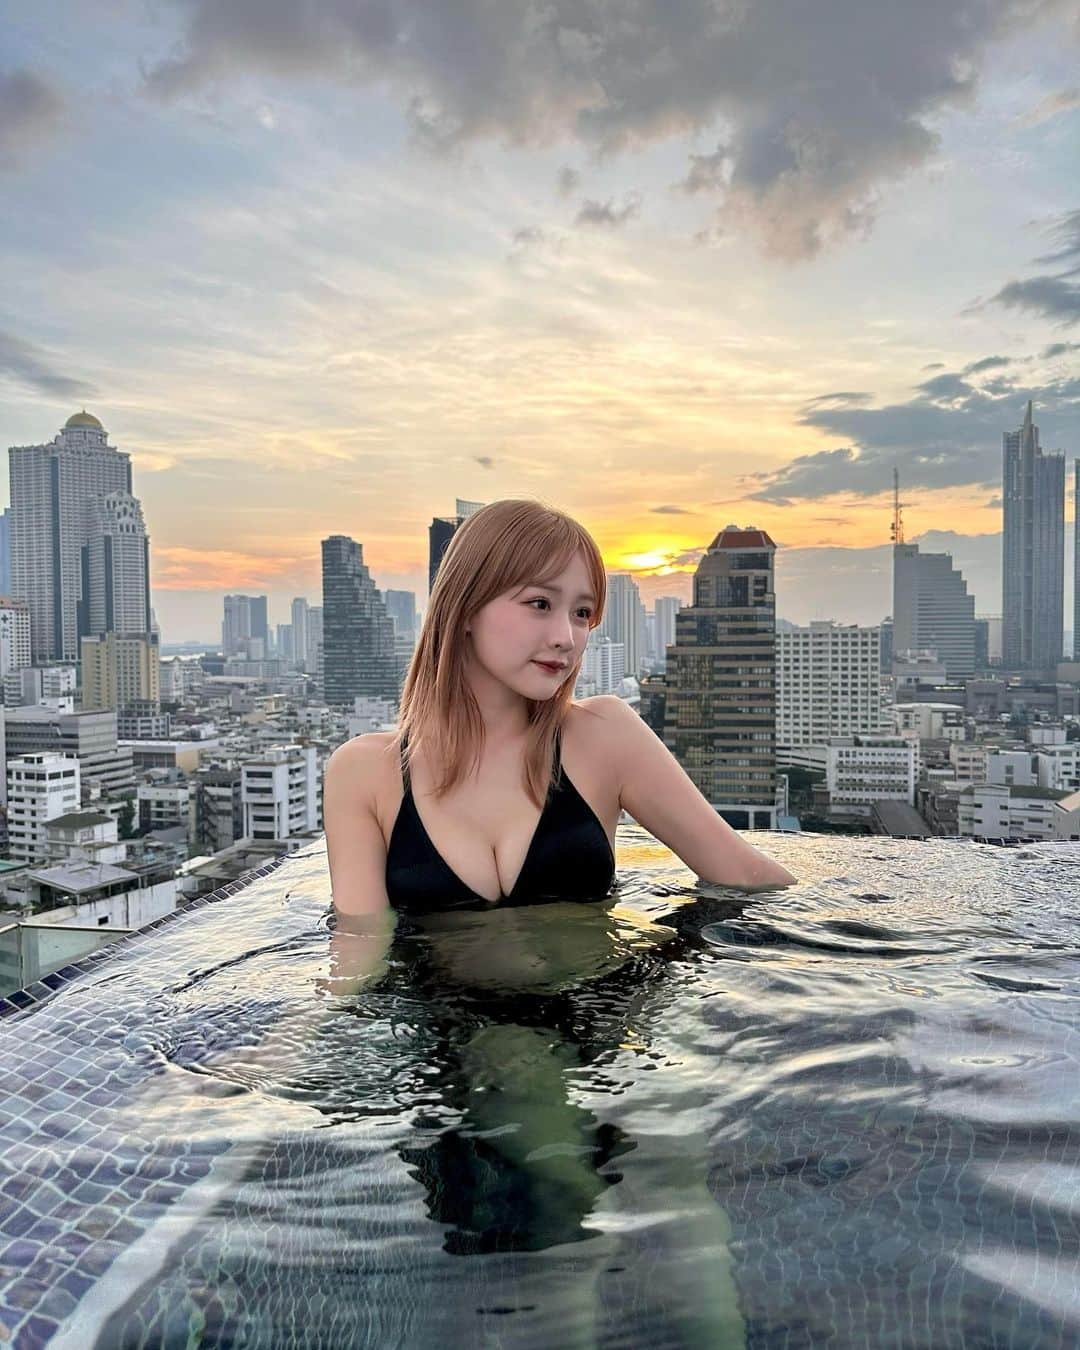 森下愛里沙(もりしたありさ) さんのインスタグラム写真 - (森下愛里沙(もりしたありさ) Instagram)「ㅤㅤㅤㅤㅤㅤㅤㅤㅤㅤㅤㅤㅤ ㅤㅤㅤㅤㅤㅤㅤㅤㅤㅤㅤㅤㅤ ㅤㅤㅤㅤㅤㅤㅤㅤㅤㅤㅤㅤㅤ バンコクで泊まったホテルのプール お部屋からもプールの景色が見れるんだぁ めちゃくちゃ綺麗でずっとここに居たかった。 ㅤㅤㅤㅤㅤㅤㅤㅤㅤㅤㅤㅤㅤㅤㅤㅤㅤㅤㅤㅤㅤㅤㅤㅤㅤㅤ ㅤㅤㅤㅤㅤㅤㅤㅤㅤㅤㅤㅤㅤ 今回泊まったホテルは @marriottsurawongse  ㅤㅤㅤㅤㅤㅤㅤㅤㅤㅤㅤㅤㅤ ㅤㅤㅤㅤㅤㅤㅤㅤㅤㅤㅤㅤㅤ 水着👙 @shein_japan  ㅤㅤㅤㅤㅤㅤㅤㅤㅤㅤㅤㅤㅤ  試すたび、好きが見つかる。届くたび、好きが増えてく。 がキャッチフレーズでSHEINは本当にアイテムを頼むたびにどんどん好きが増えていくよね🥰 ㅤㅤㅤㅤㅤㅤㅤㅤㅤㅤㅤㅤㅤ ㅤㅤㅤㅤㅤㅤㅤㅤㅤㅤㅤㅤㅤ 11月27日までBLACK FRIDAYセールが行われていて、SHEIN30万点以上の人気アイテムが限定値下げされてて最大90パーセントOFFのアイテムもあるの🫶🏻 ㅤㅤㅤㅤㅤㅤㅤㅤㅤㅤㅤㅤㅤ クーポンコード▶『23BF24』 ※0-5999円で15%オフ,6000円 以上のご購入で20%オフ 利用期限:2023年11月10日~2023年12月31日 ※SHEIN アカウント1つにつき 3回までクーポン利用できます⭐️ ㅤㅤㅤㅤㅤㅤㅤㅤㅤㅤㅤㅤㅤ ㅤㅤㅤㅤㅤㅤㅤㅤㅤㅤㅤㅤㅤ ㅤㅤㅤㅤㅤㅤㅤㅤㅤㅤㅤㅤㅤ  #SHEINblackfriday #ad #loveshein #SHEINGoodFinds #SHEIN購入品 #BeSHEINモデル #SHEINforAll  #saveinstyle #海外旅行 #バンコク旅行 #バンコク #タイ #タイ旅行 #バンコクマリオットホテルザスリウォン #ホテルプール #水着 #ハイトーン #ハイトーンカラー #bangkokmarriotthotelthesurawongse」11月22日 21時45分 - mini.ari